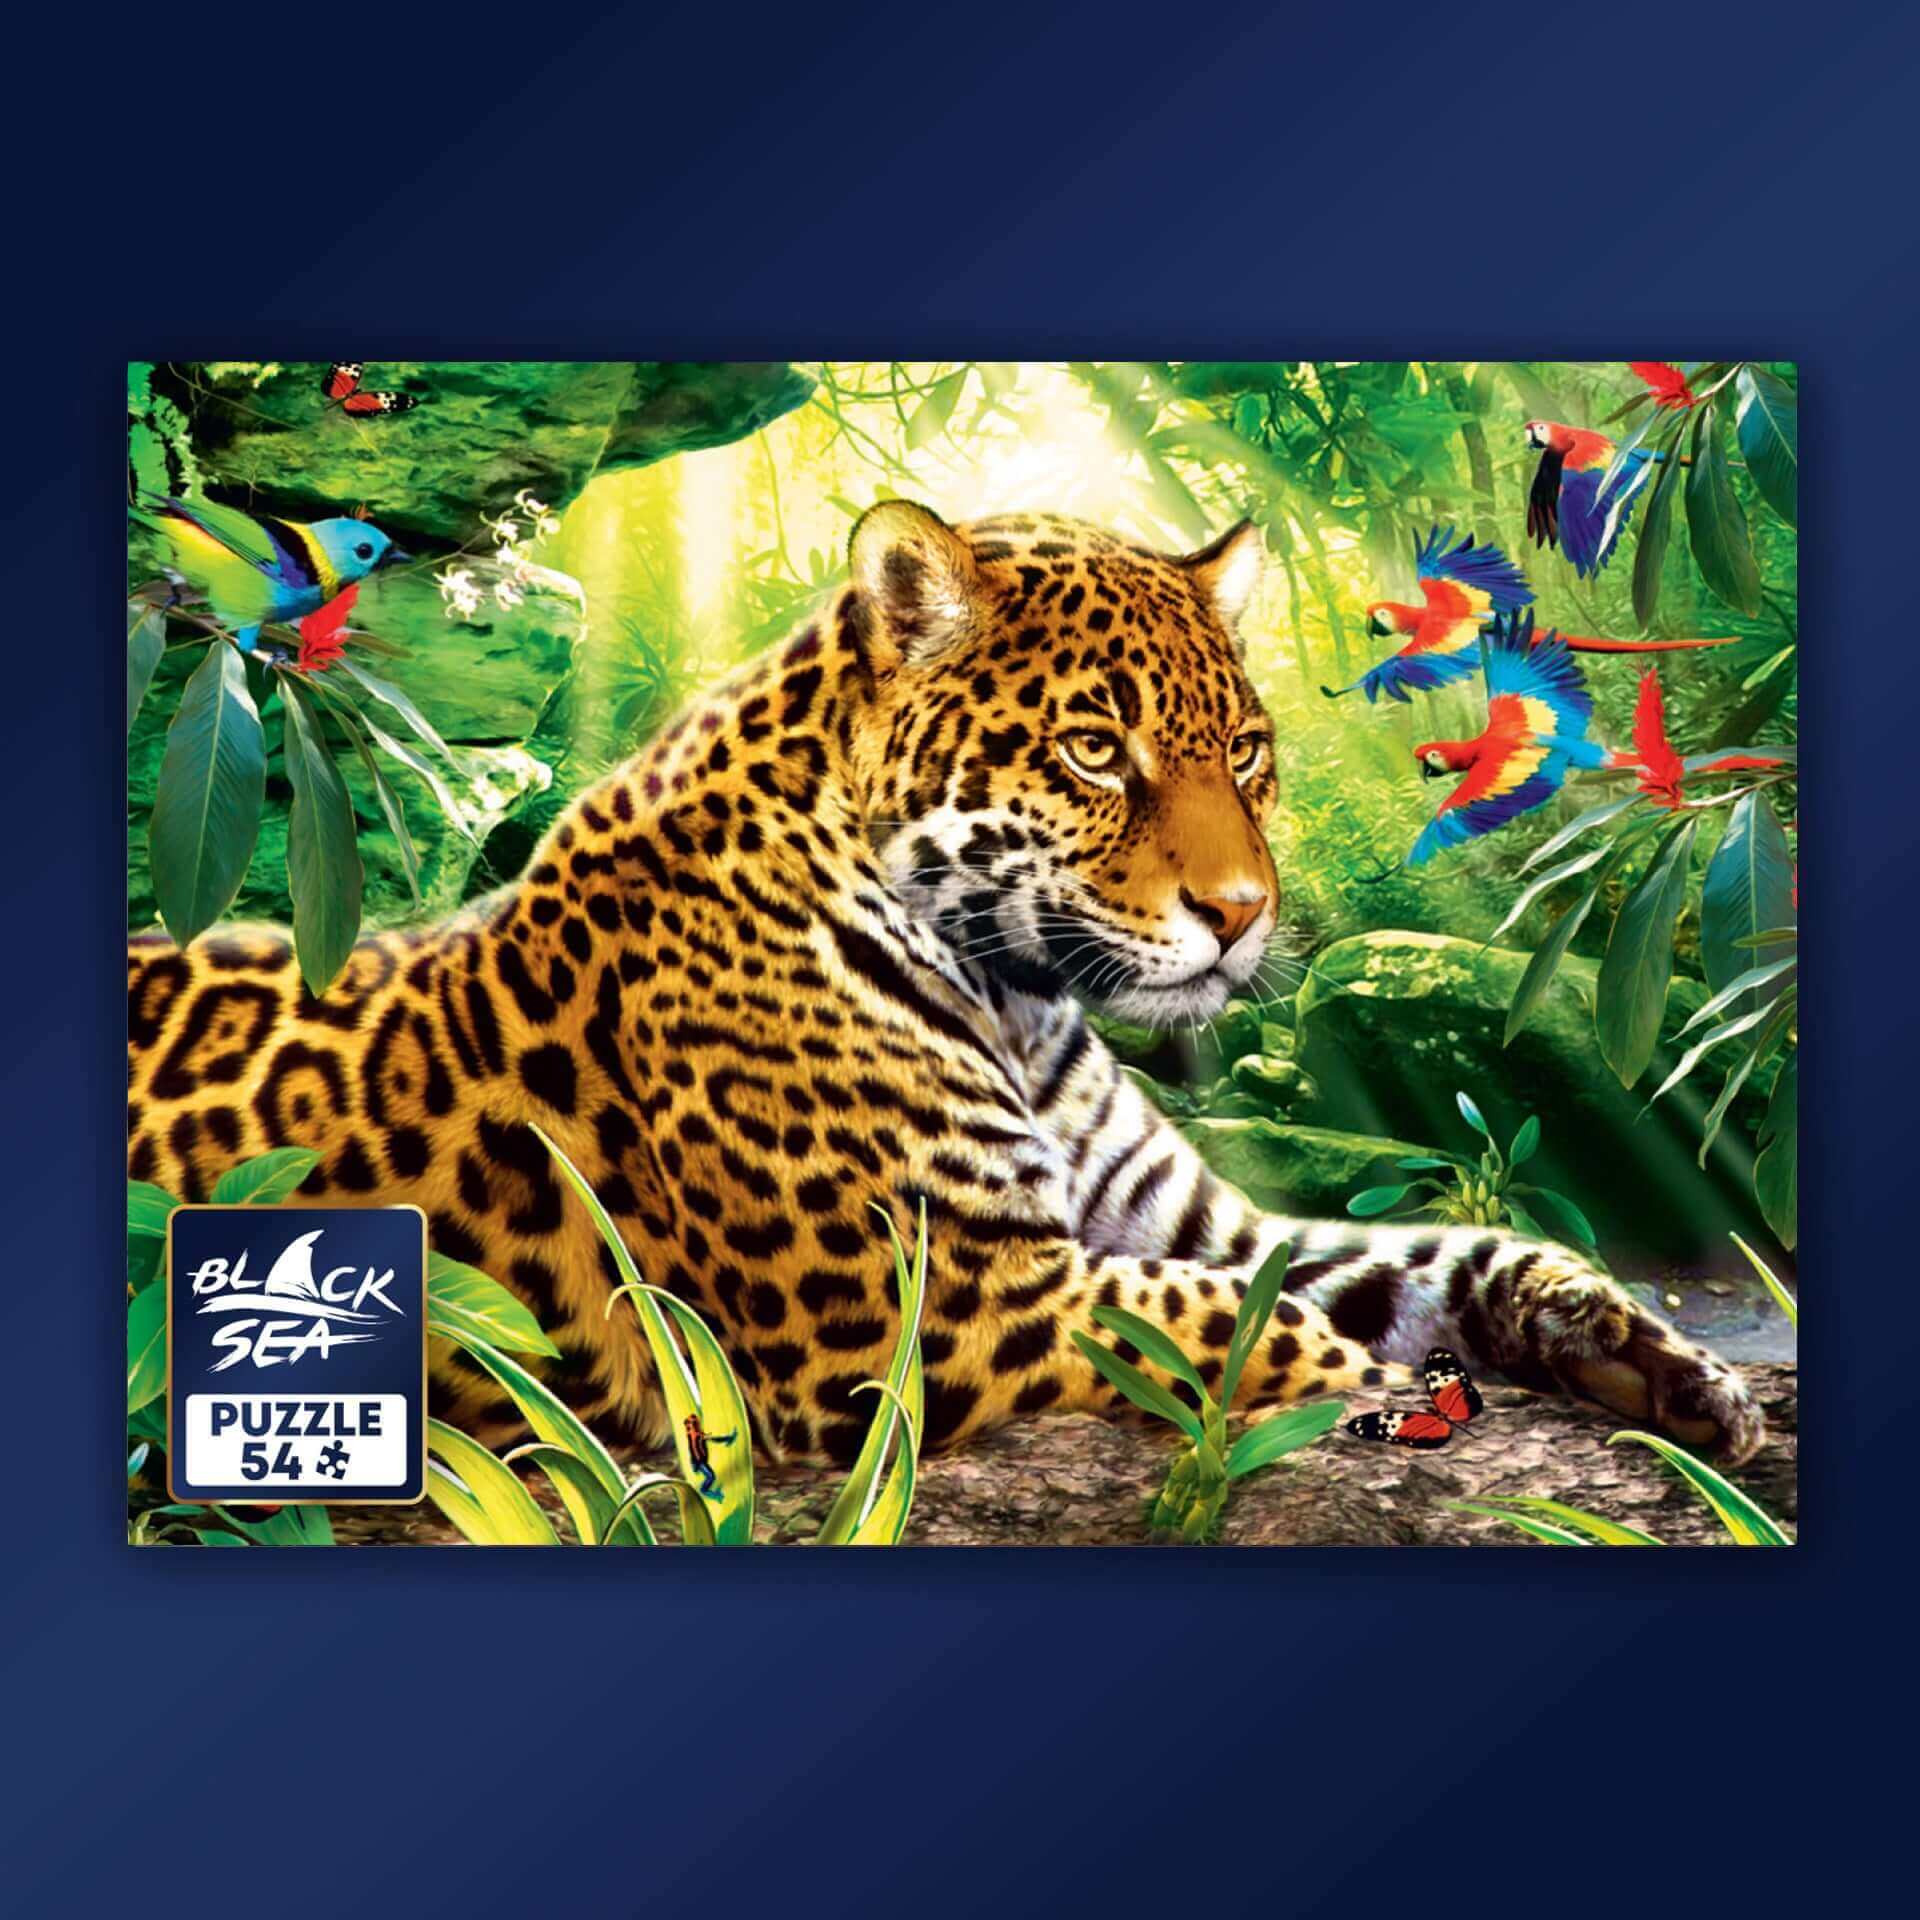 Mini puzzle Black sea 54 pieces - Tiger Family in the Jungle, -